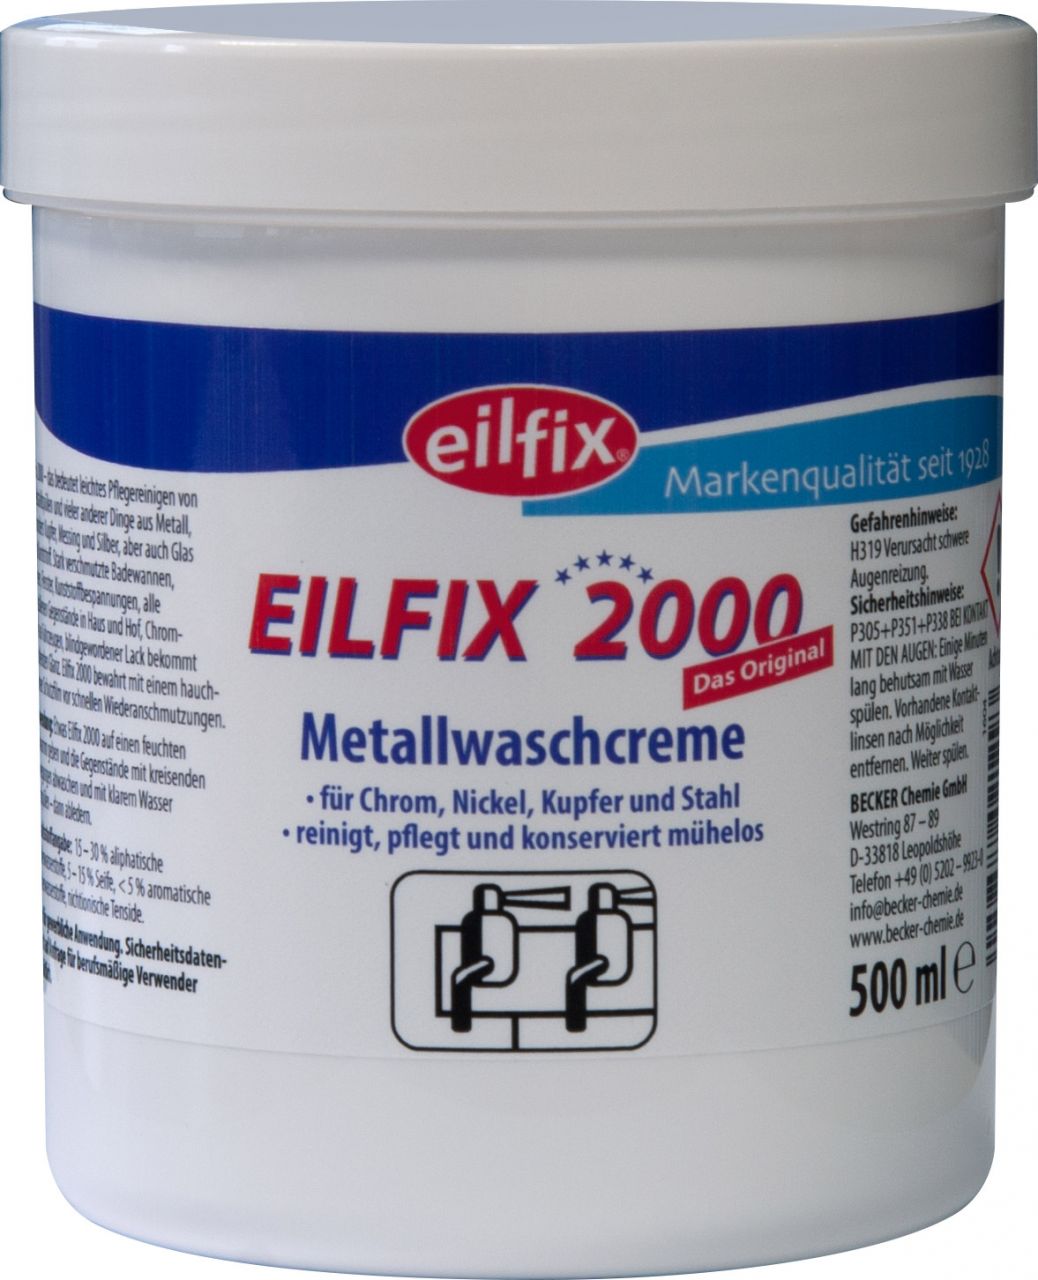 EILFIX 2000 Metallwaschcreme